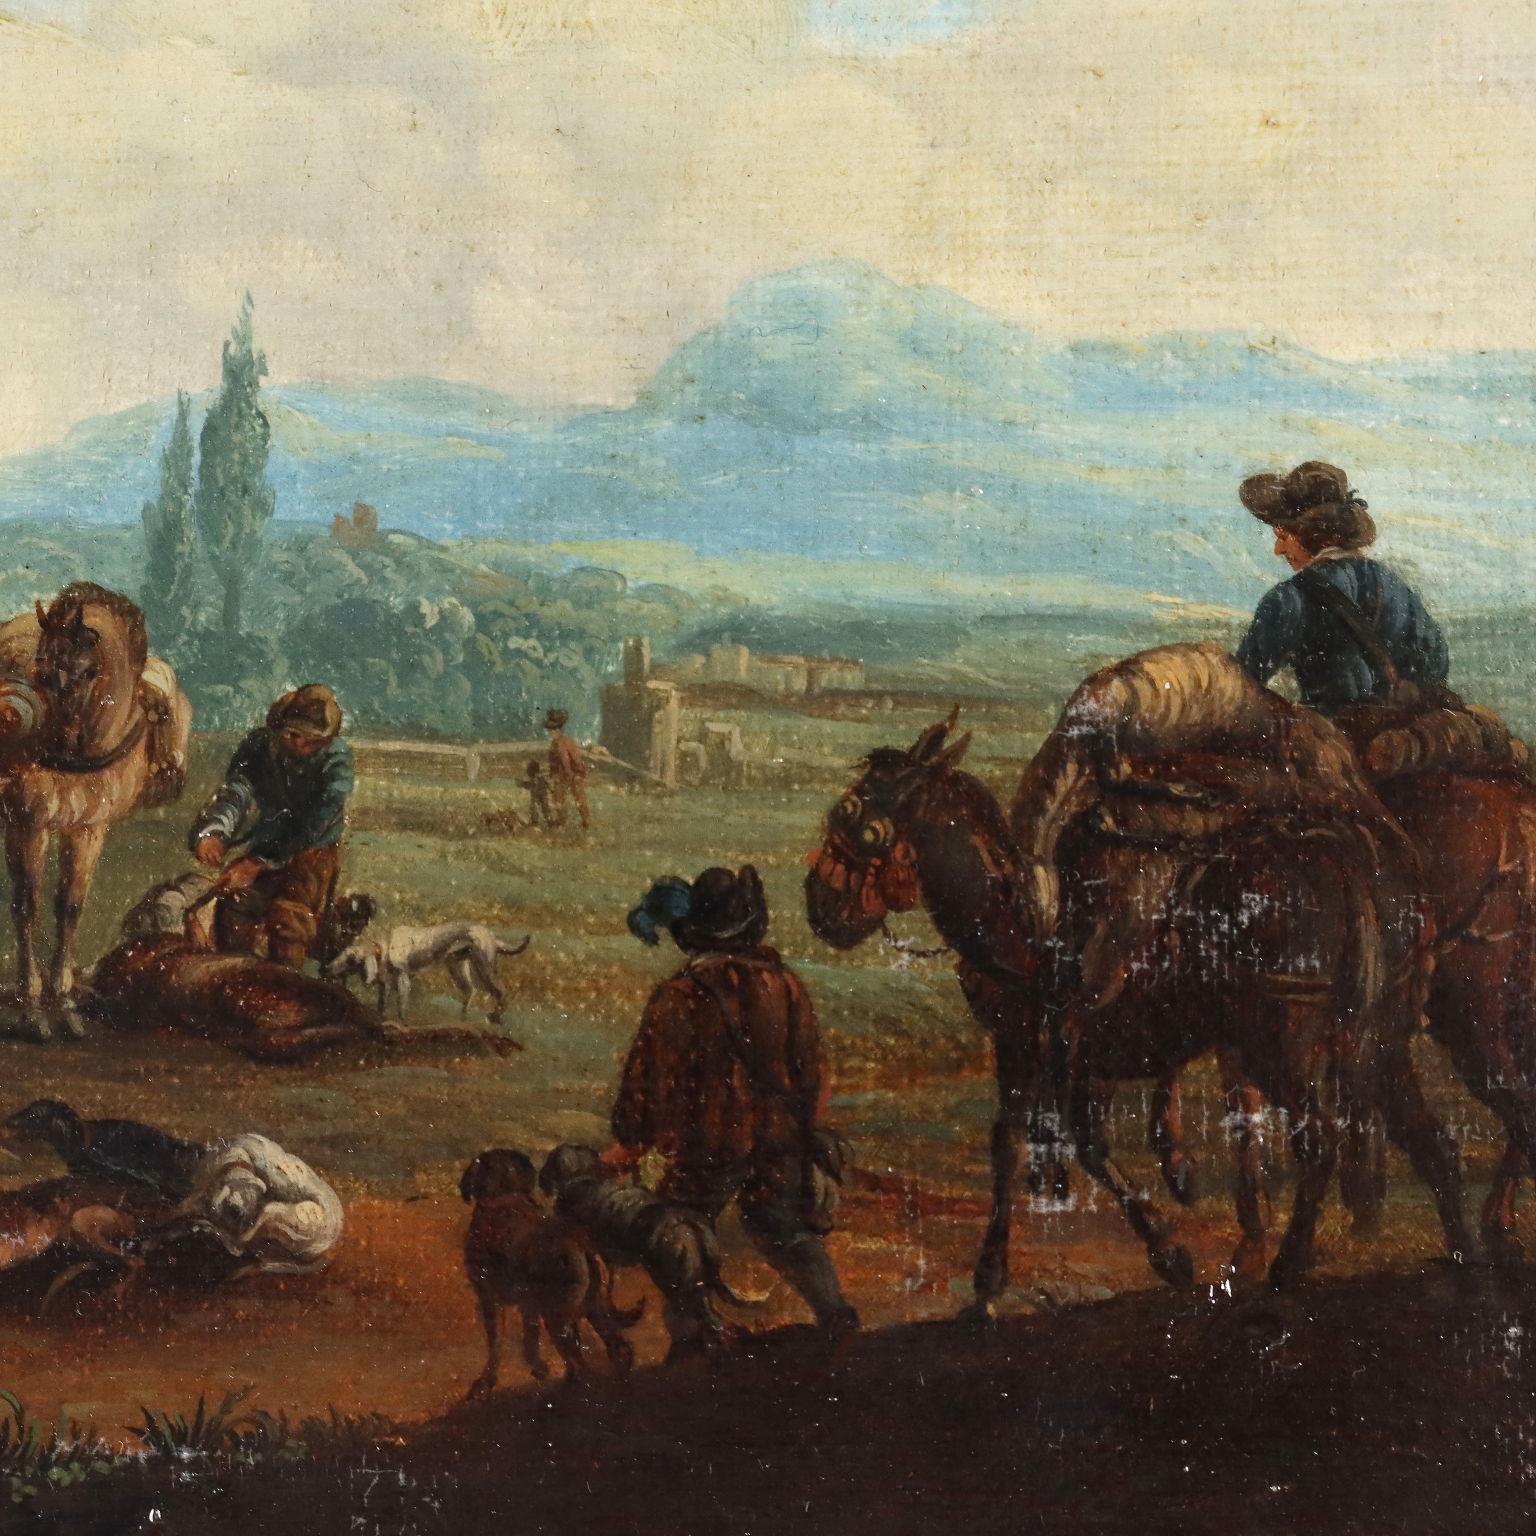 Dipinto con Scena di Genere, Il ritorno dalla Caccia, XVIII sec. - Other Art Style Painting by Unknown